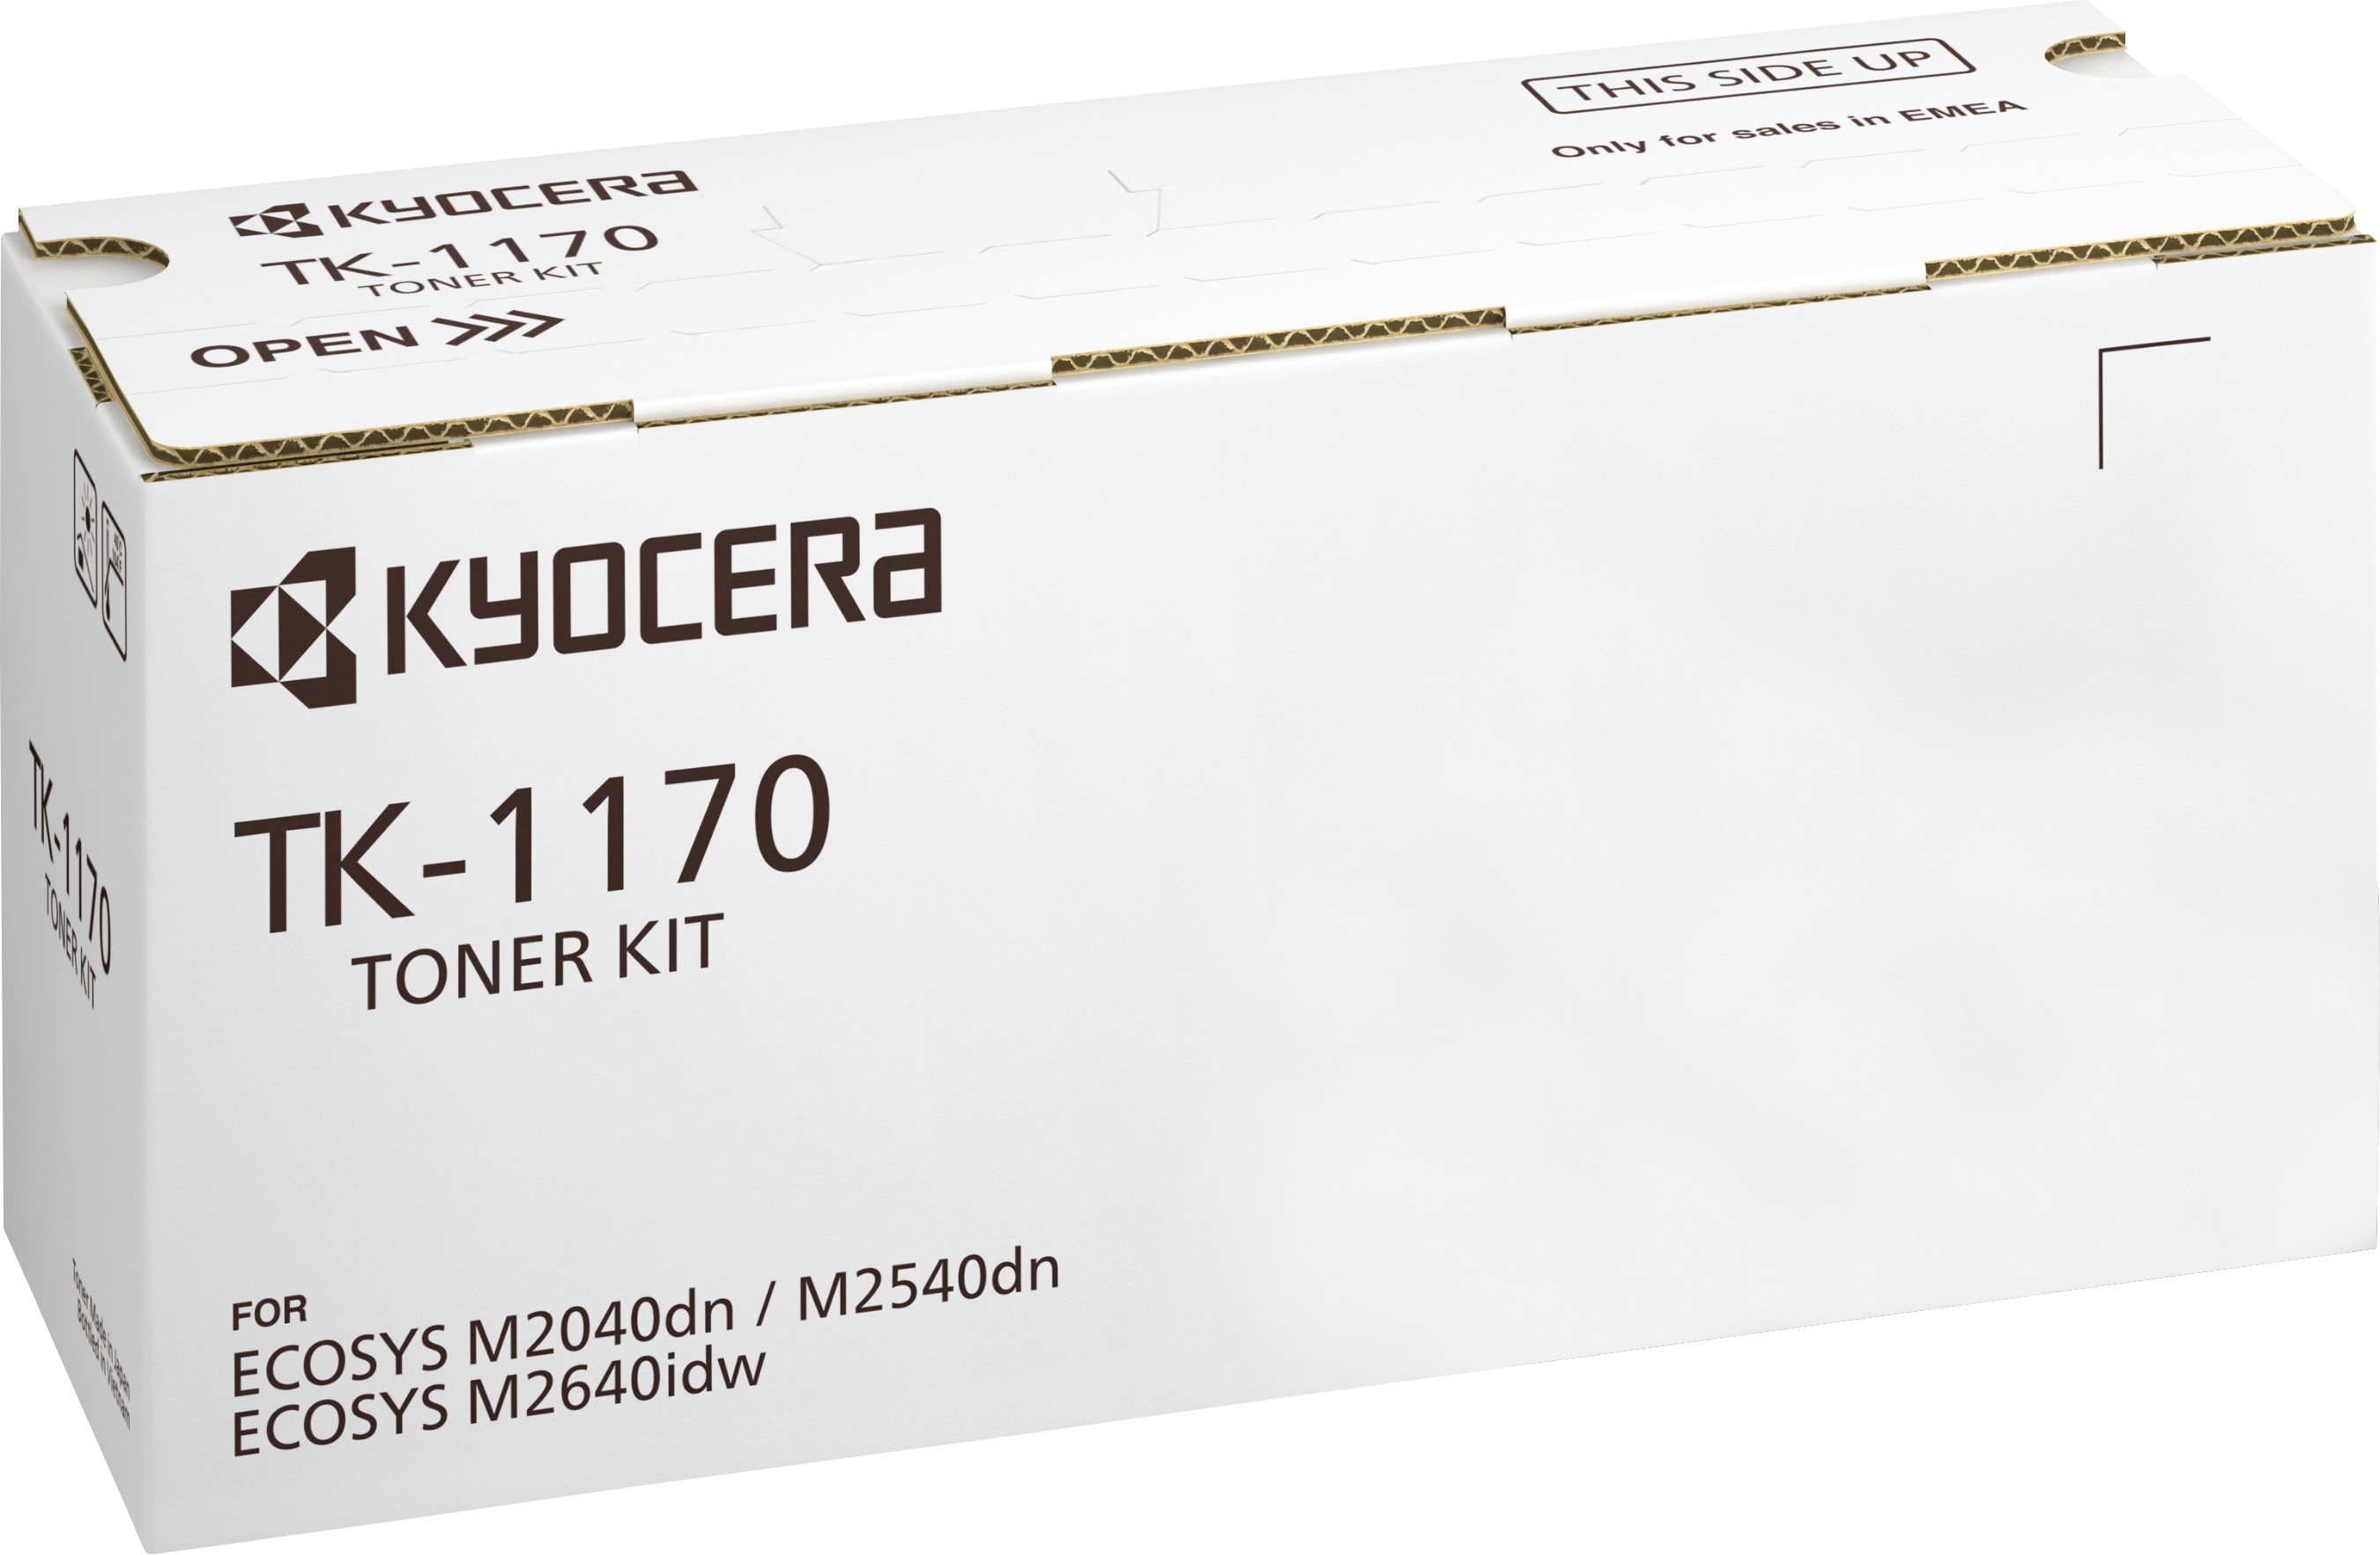 Kyocera Lasertoner TK-1170 schwarz 7.200 Seiten